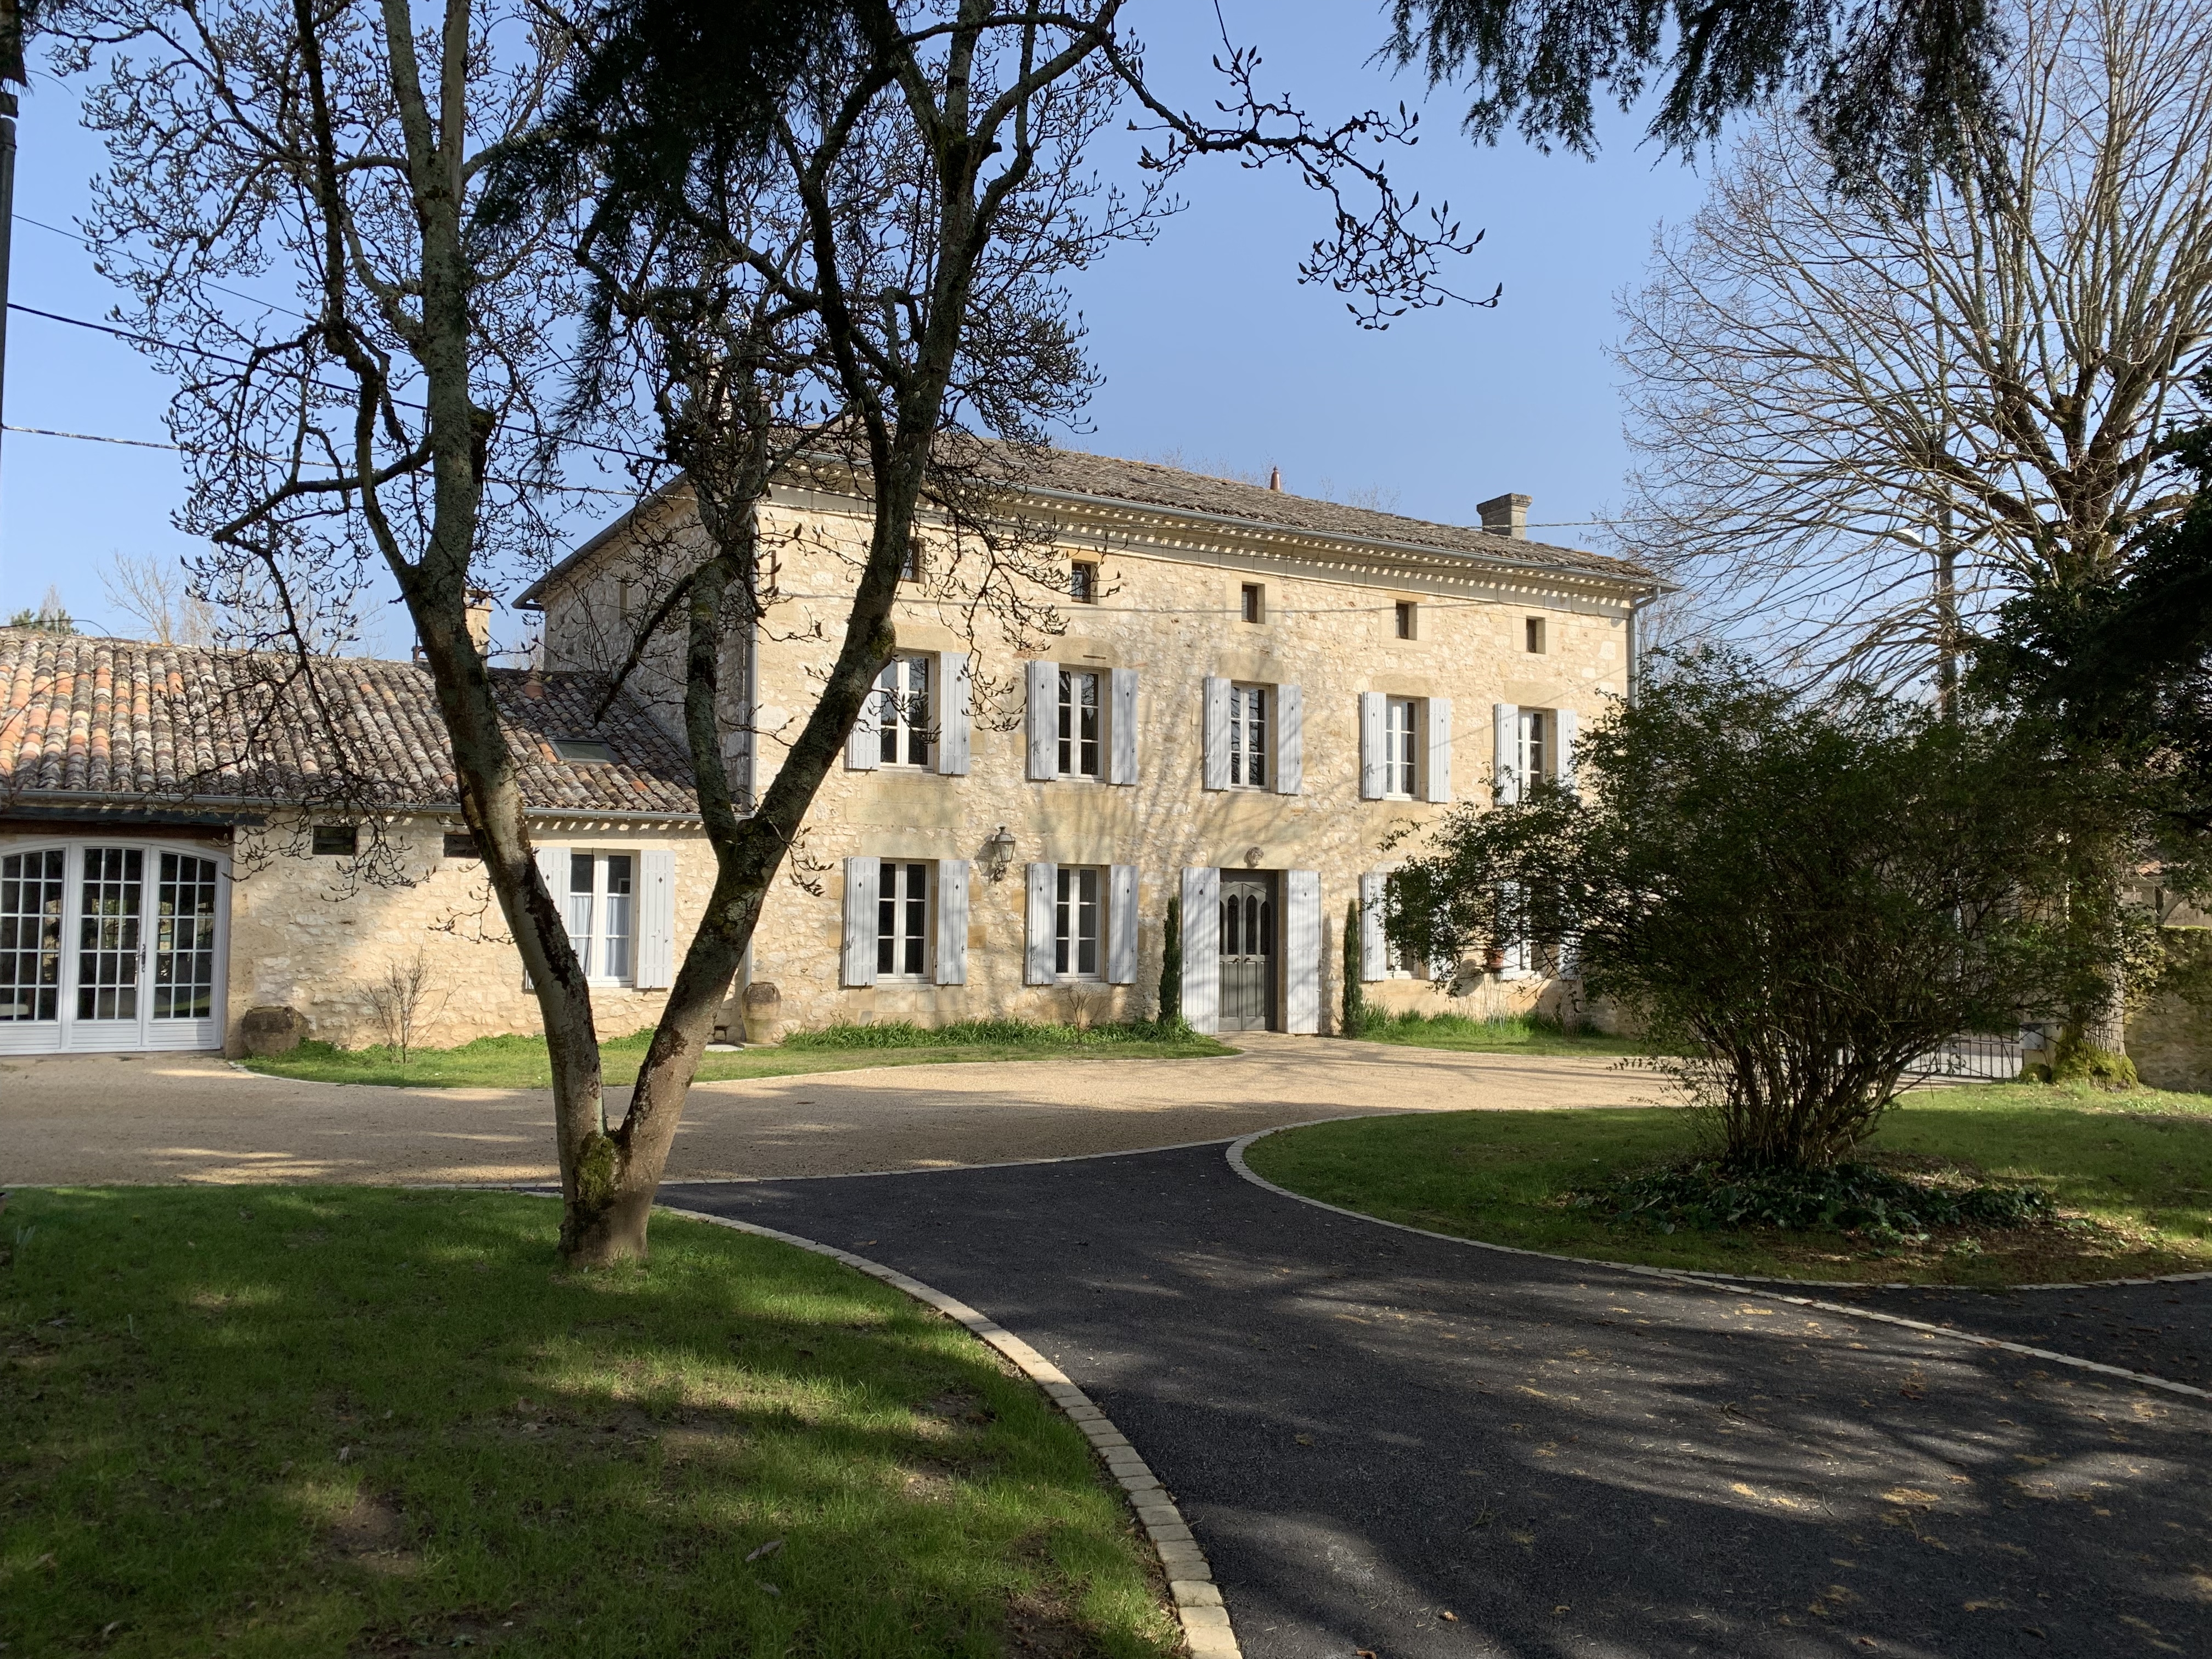 Conception cour en Gravistar, enrob noir  chaud et pav La Couture - Dordogne cre le 16/05/2019